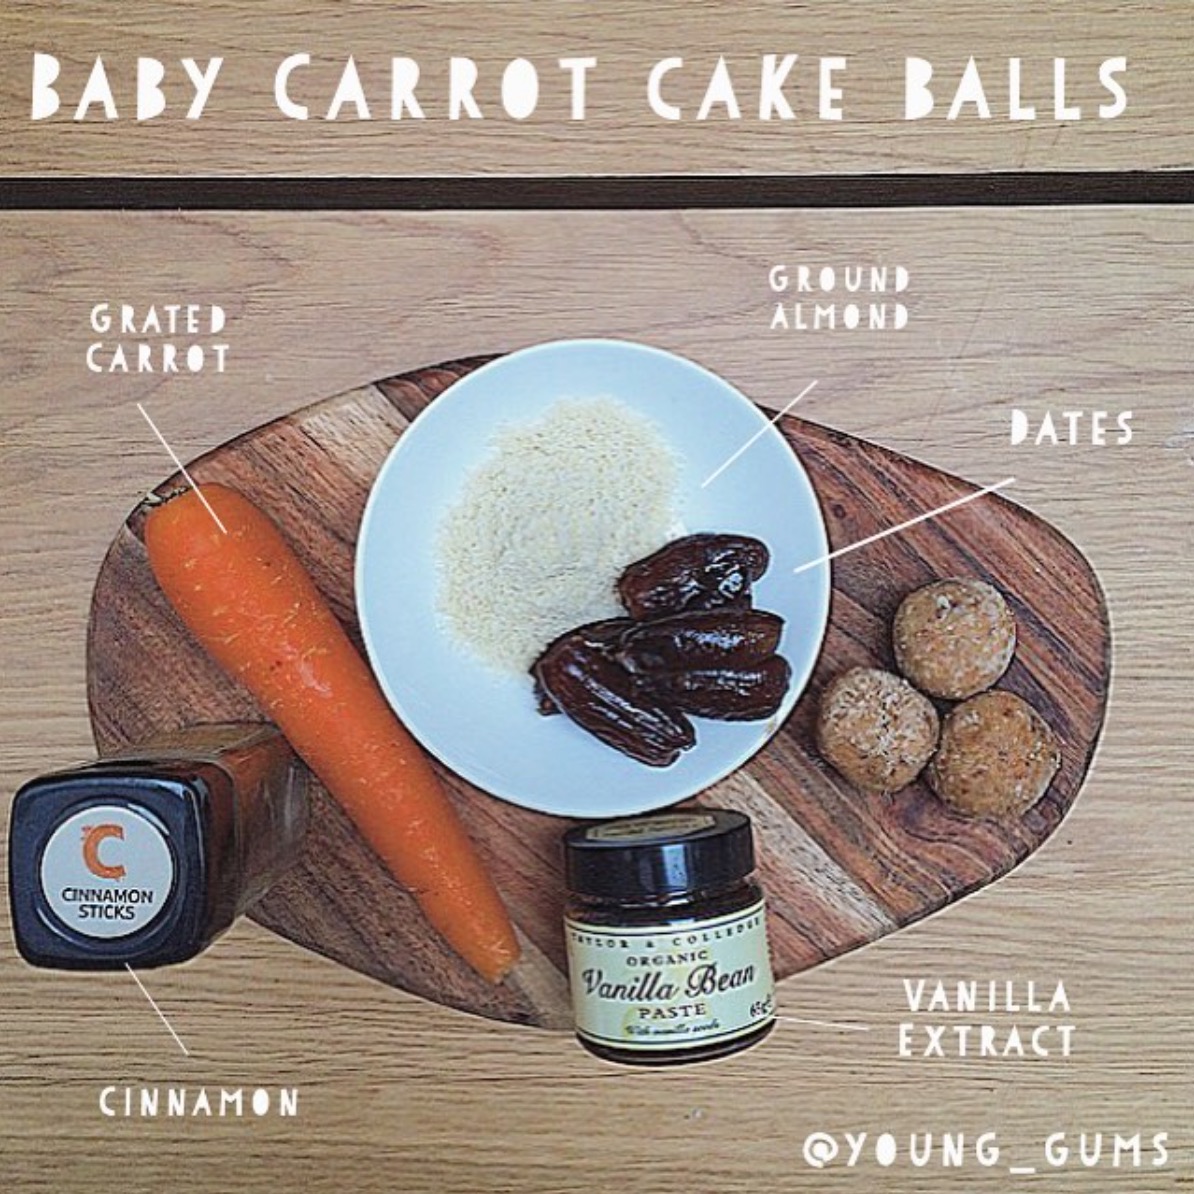 Carrot Cake Balls